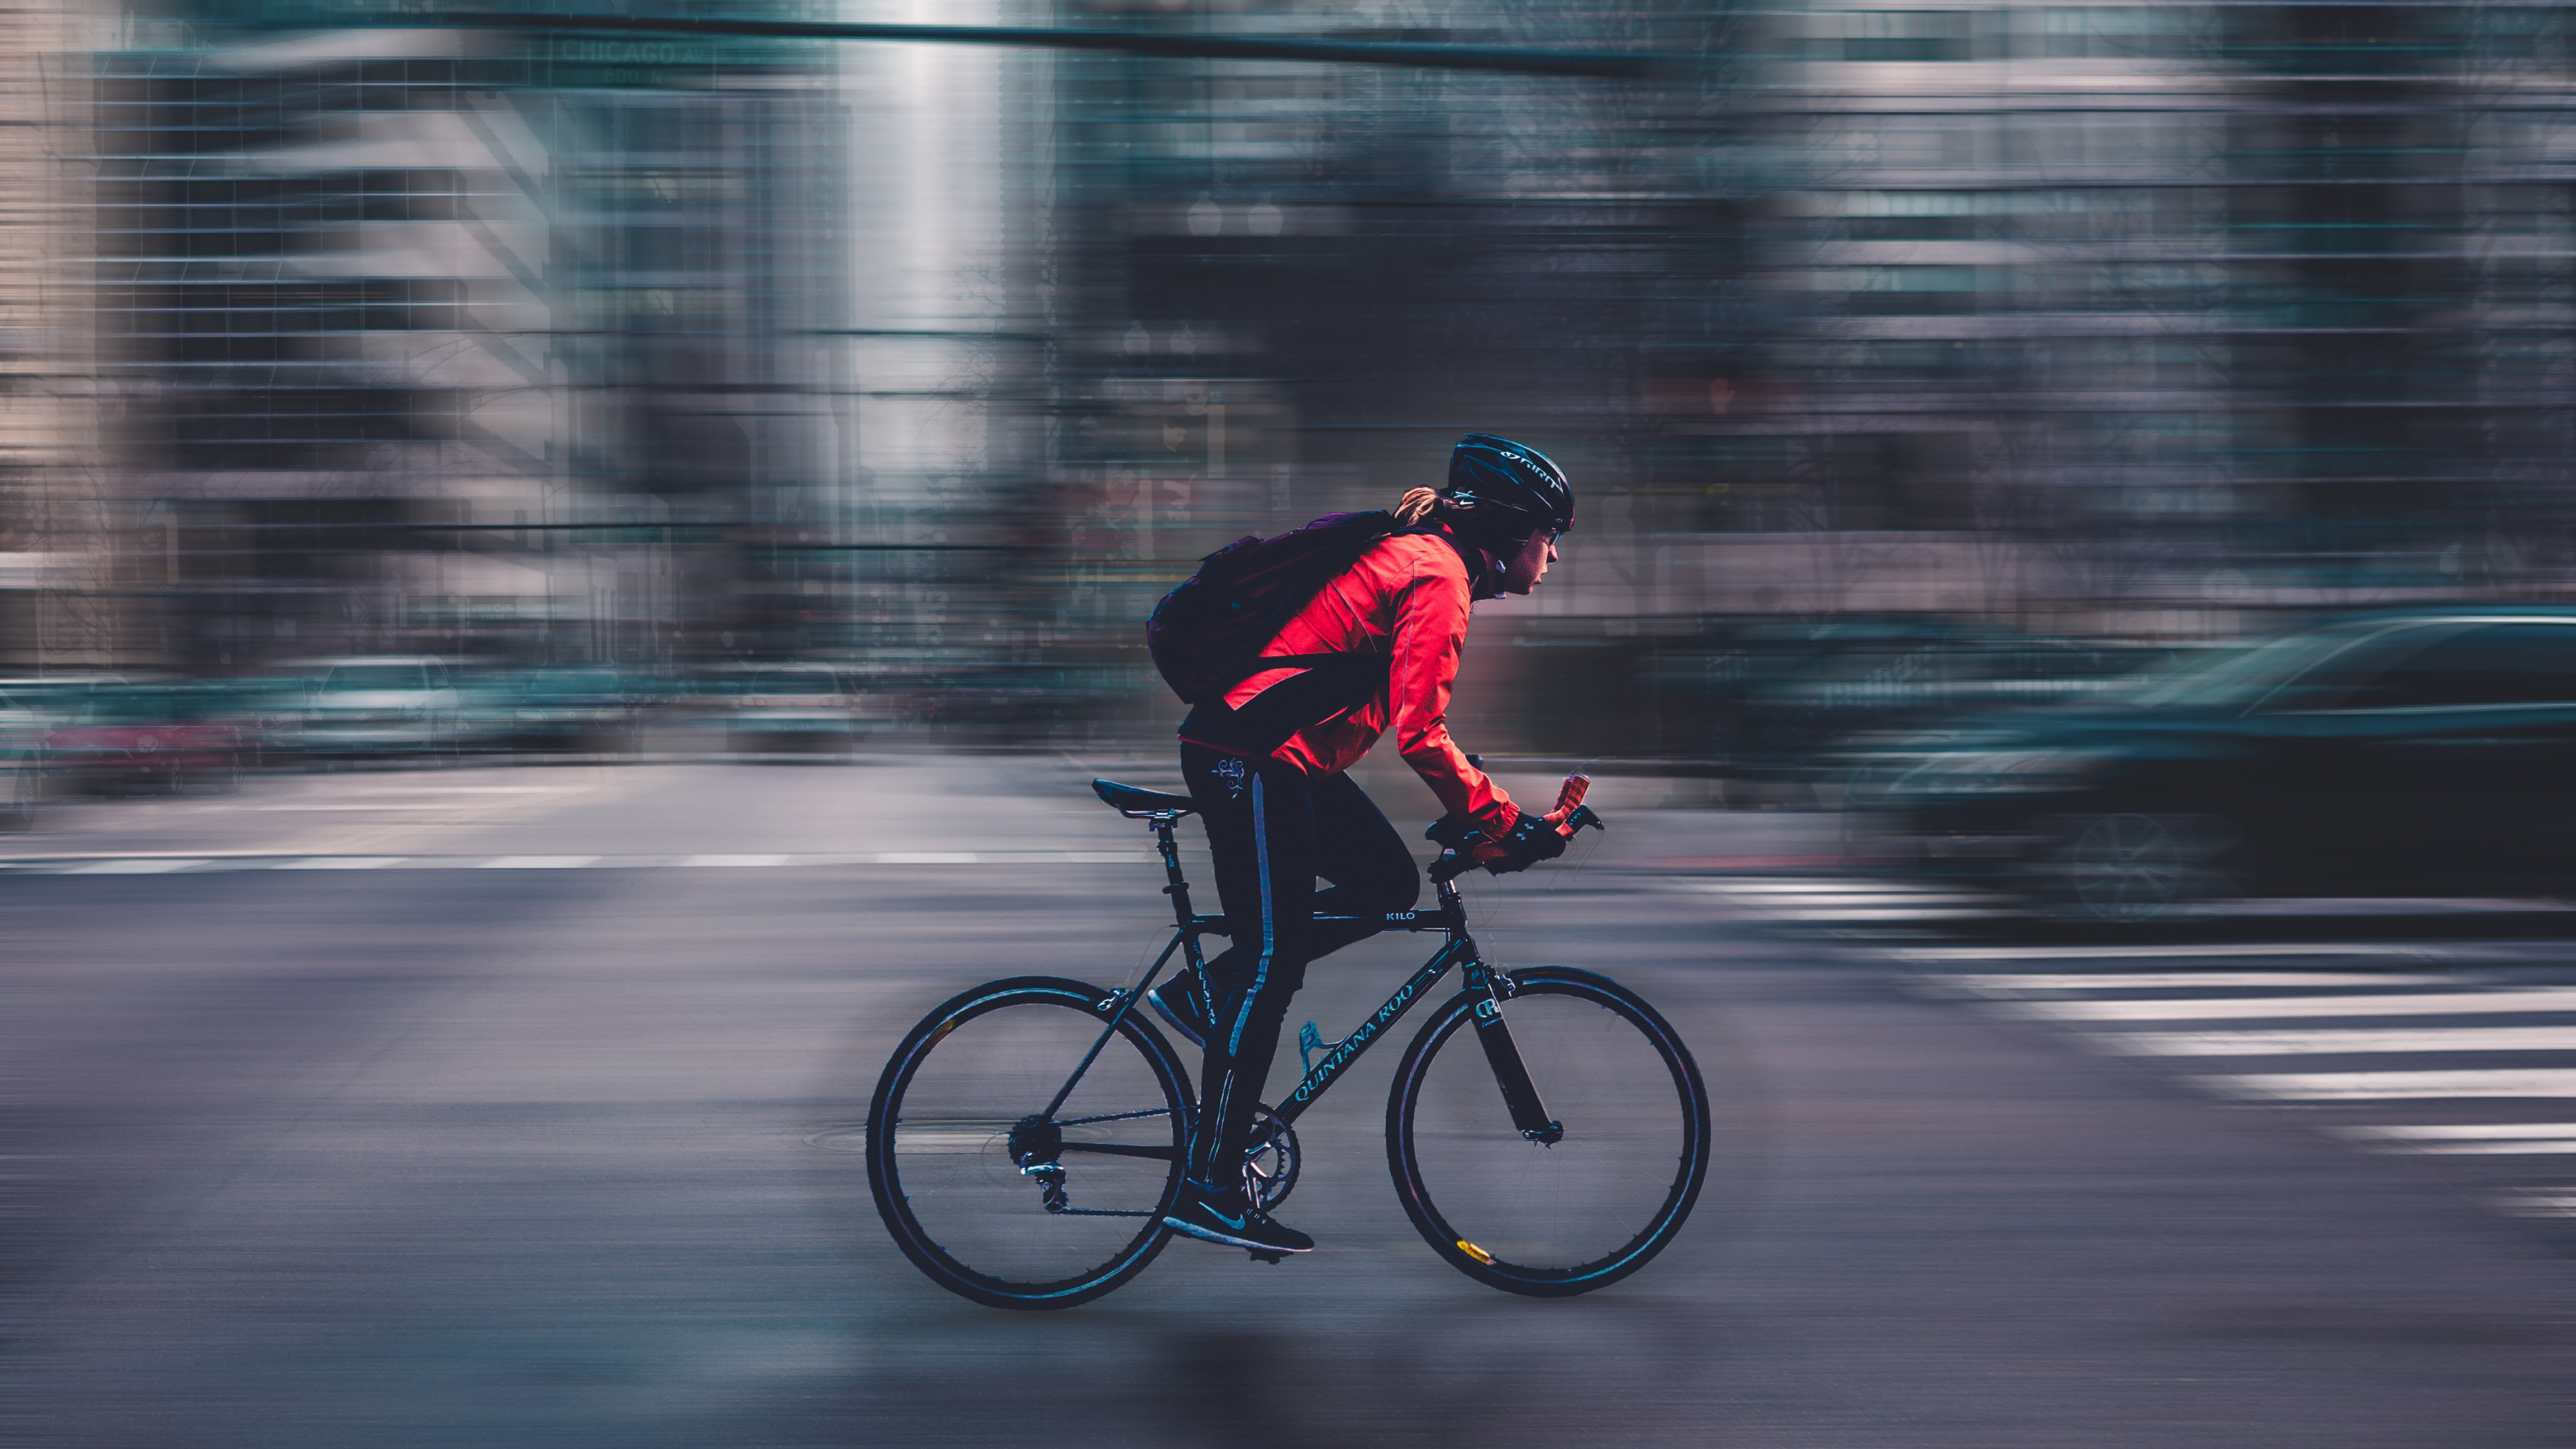 Hombre de Chaqueta Roja Montando Bicicleta en la Carretera Durante el Día. Wallpaper in 3840x2160 Resolution